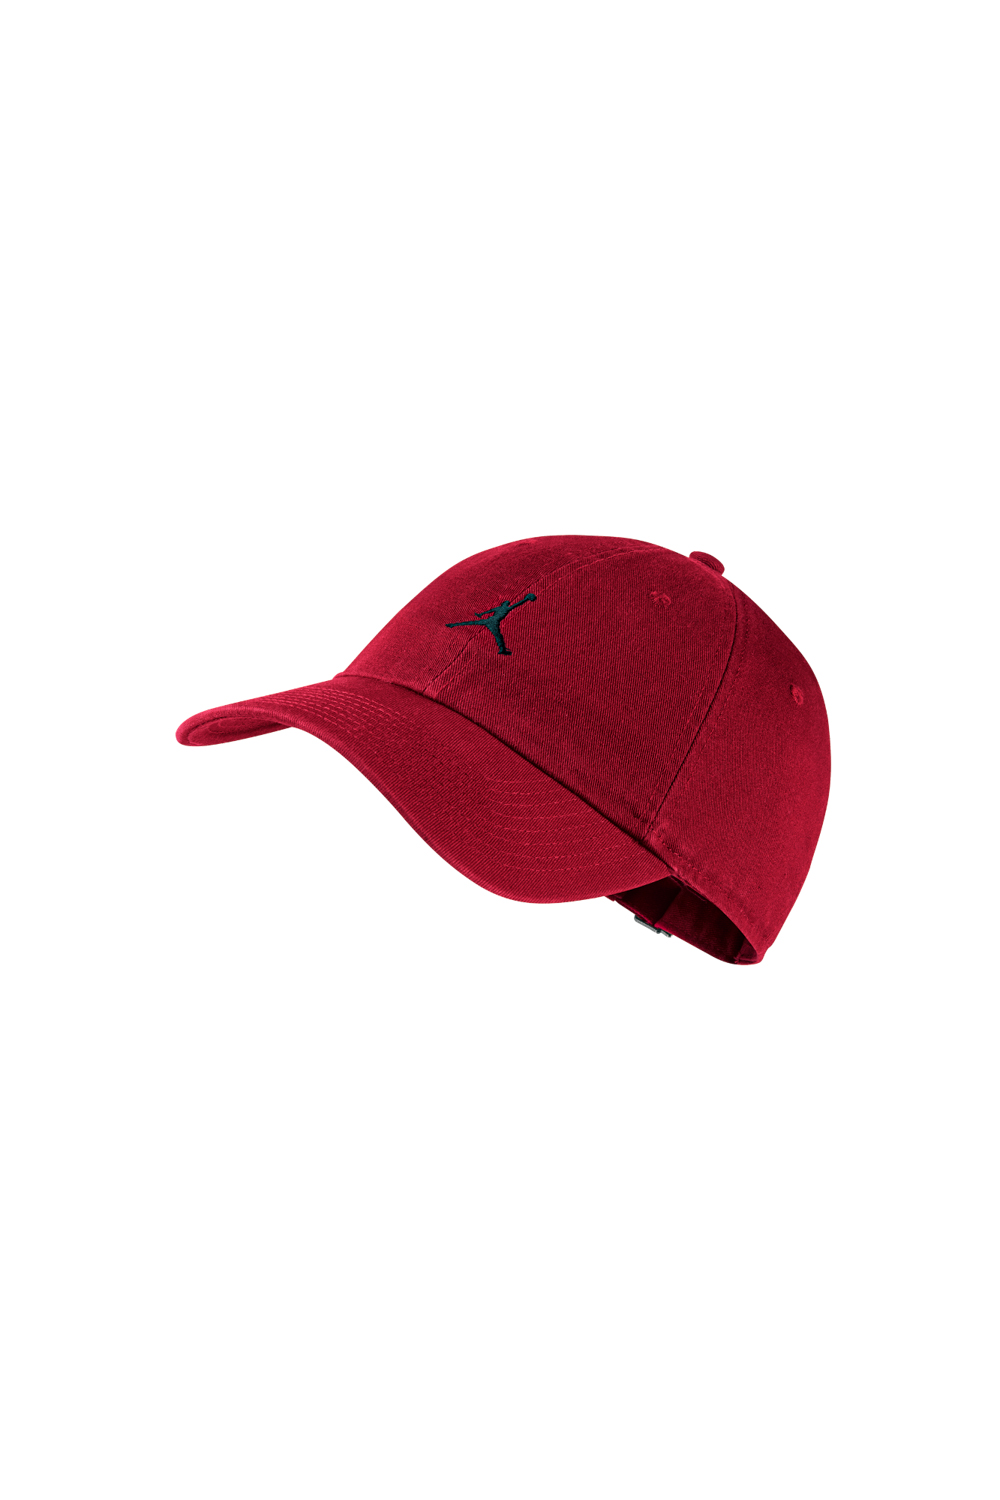 Γυναικεία/Αξεσουάρ/Καπέλα/Αθλητικά NIKE - Unisex καπέλο NIKE JORDAN H86 JUMPMAN κόκκινο